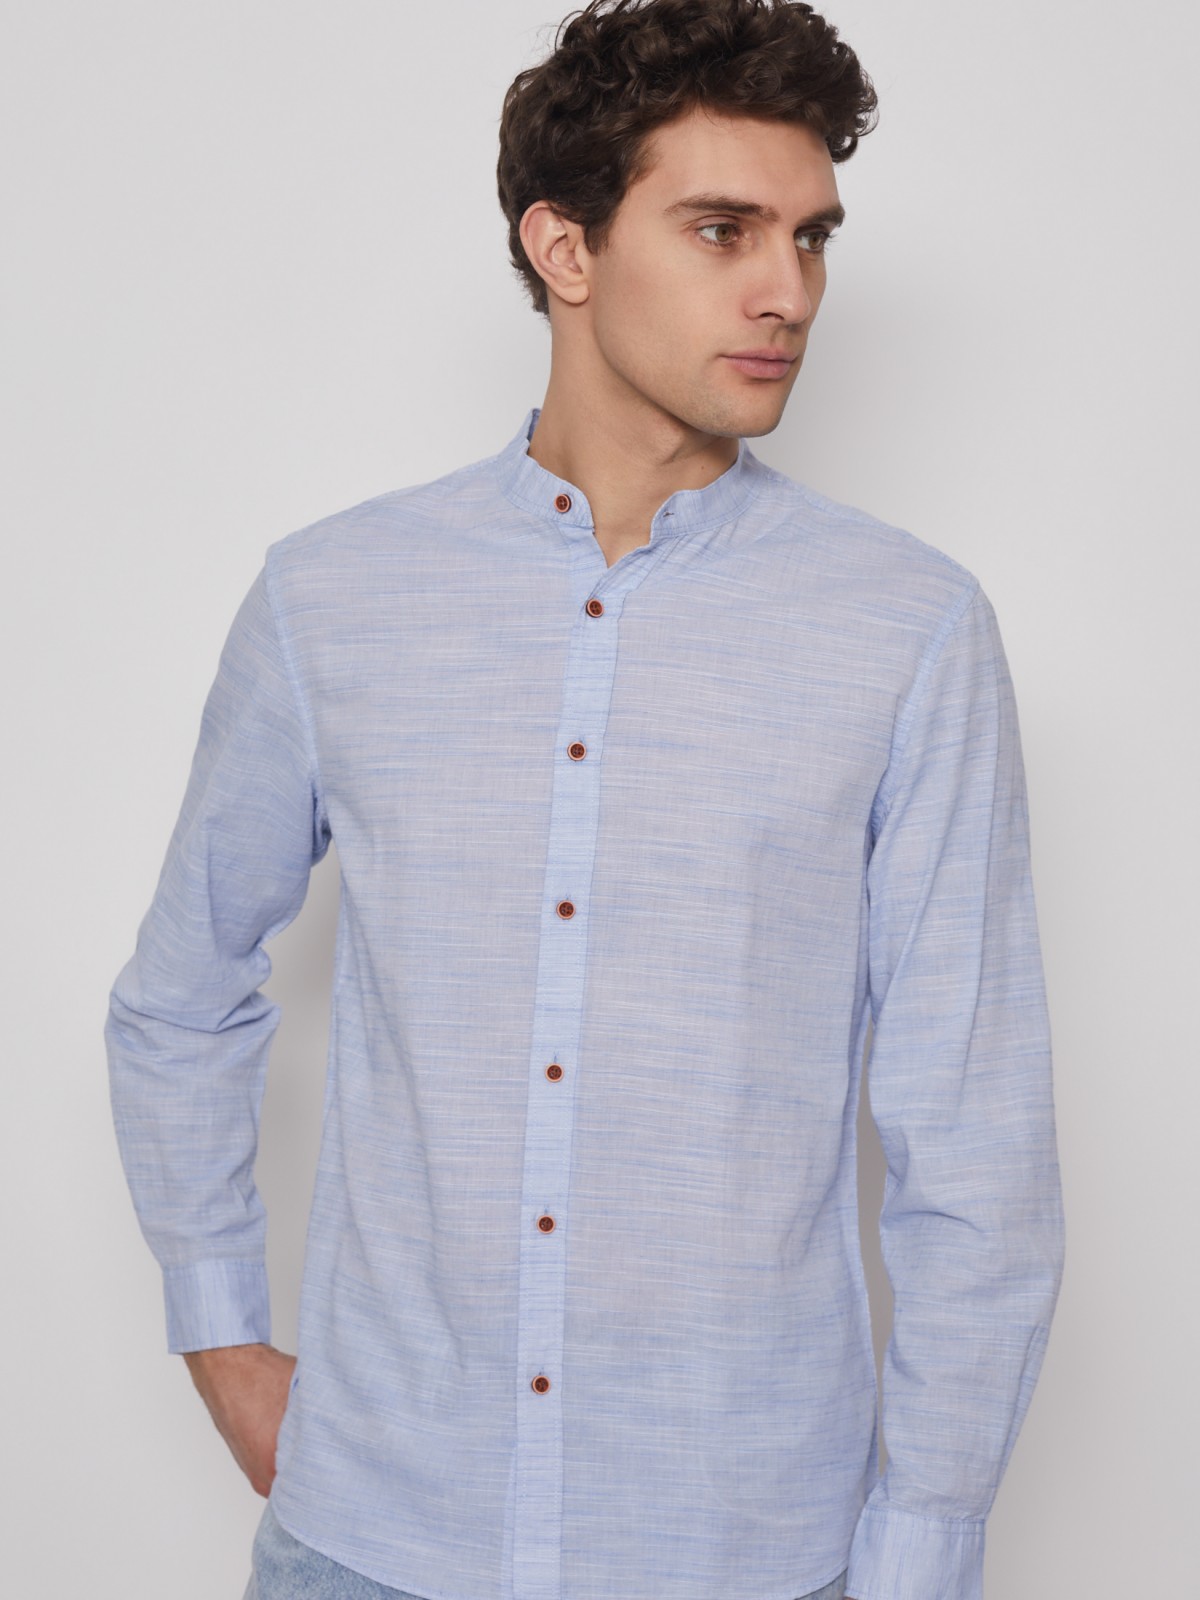 Хлопковая рубашка с длинным рукавом zolla 012232159041, цвет светло-голубой, размер S - фото 4